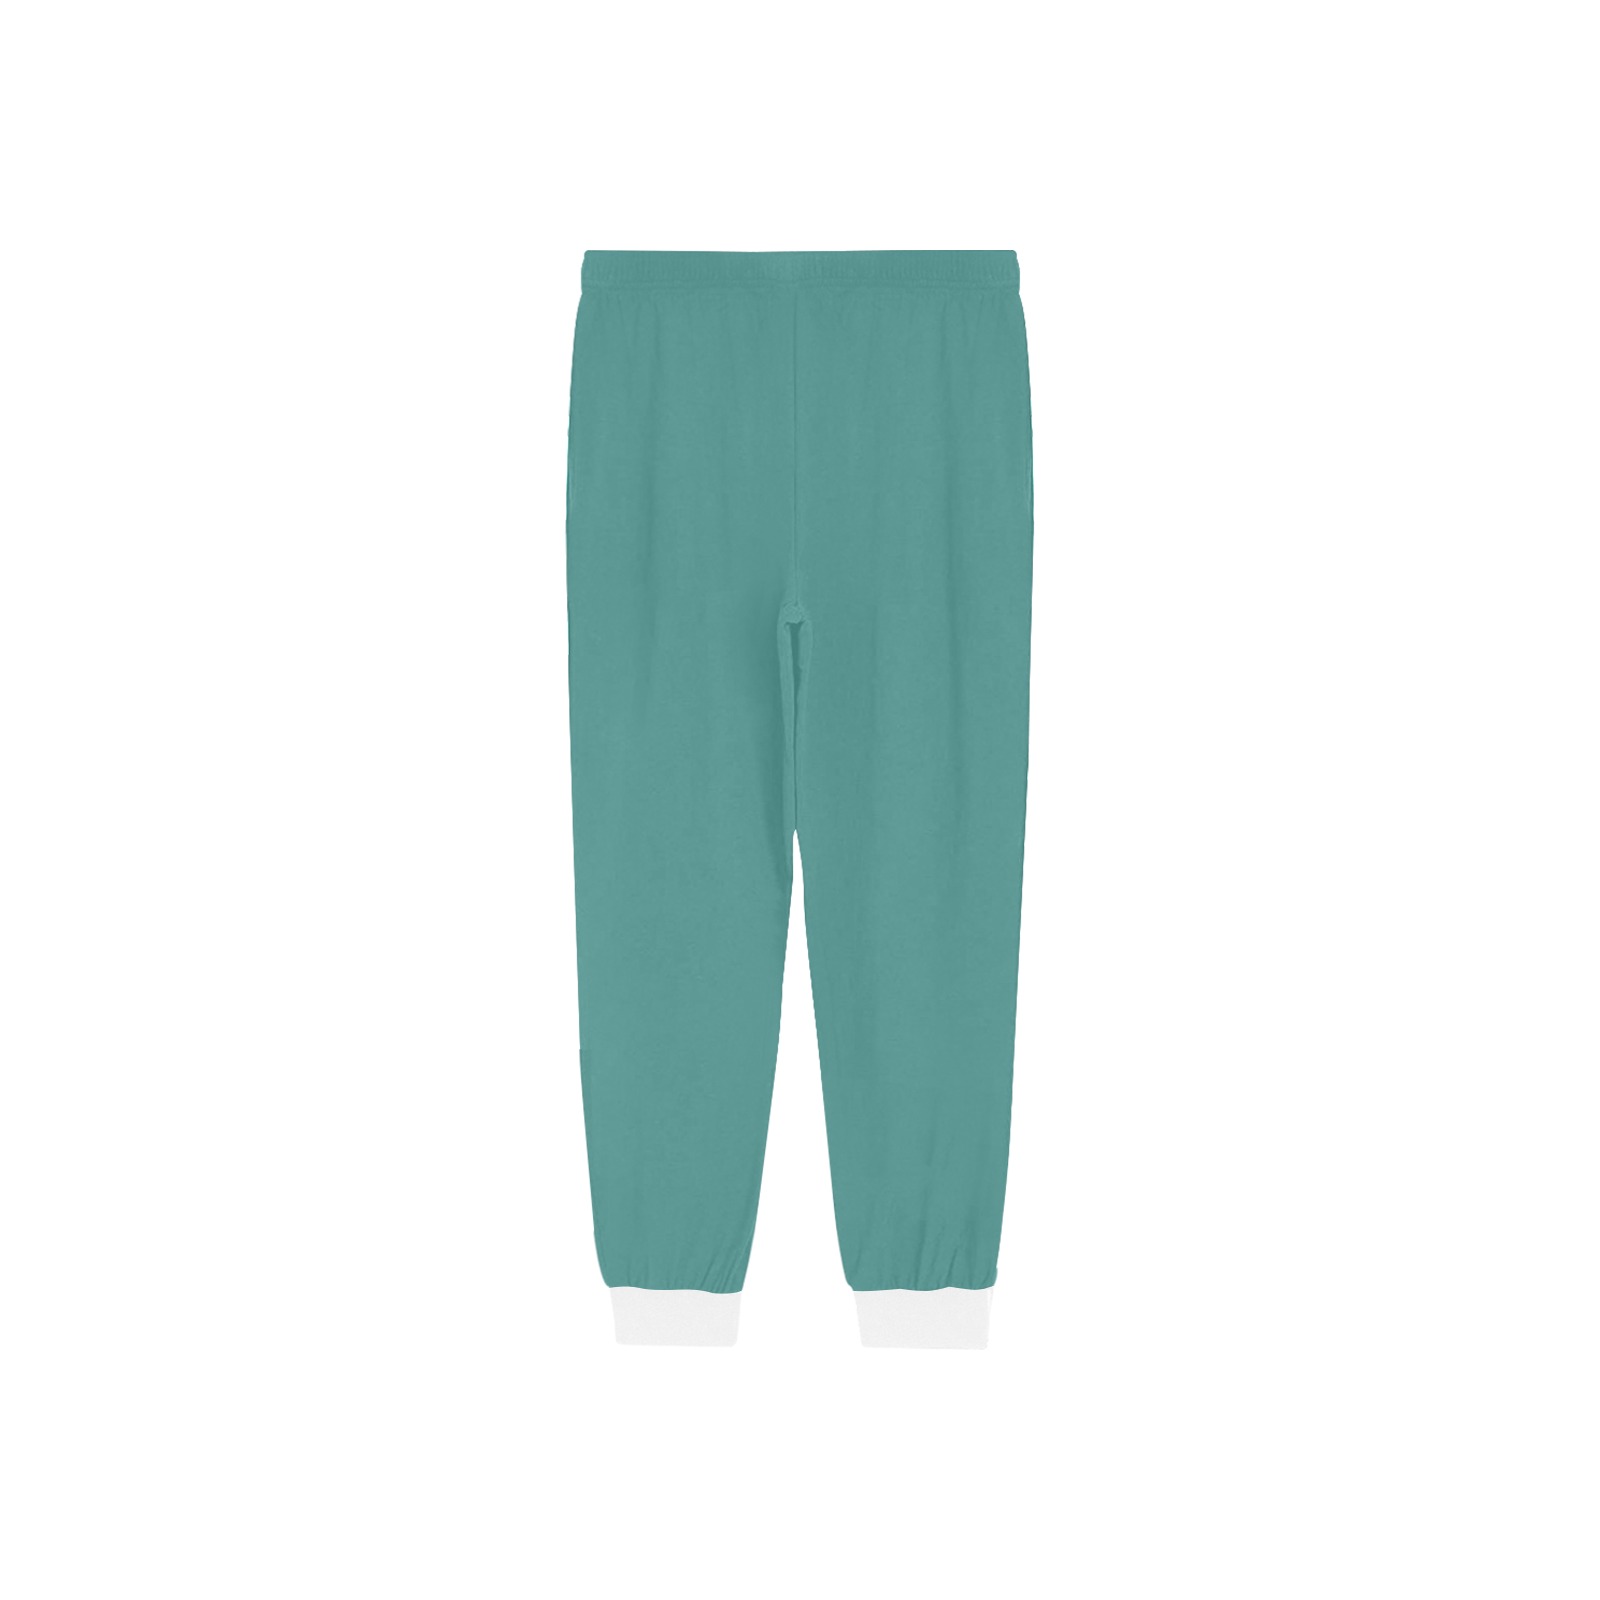 Green Pajama Pants Men's Pajama Trousers